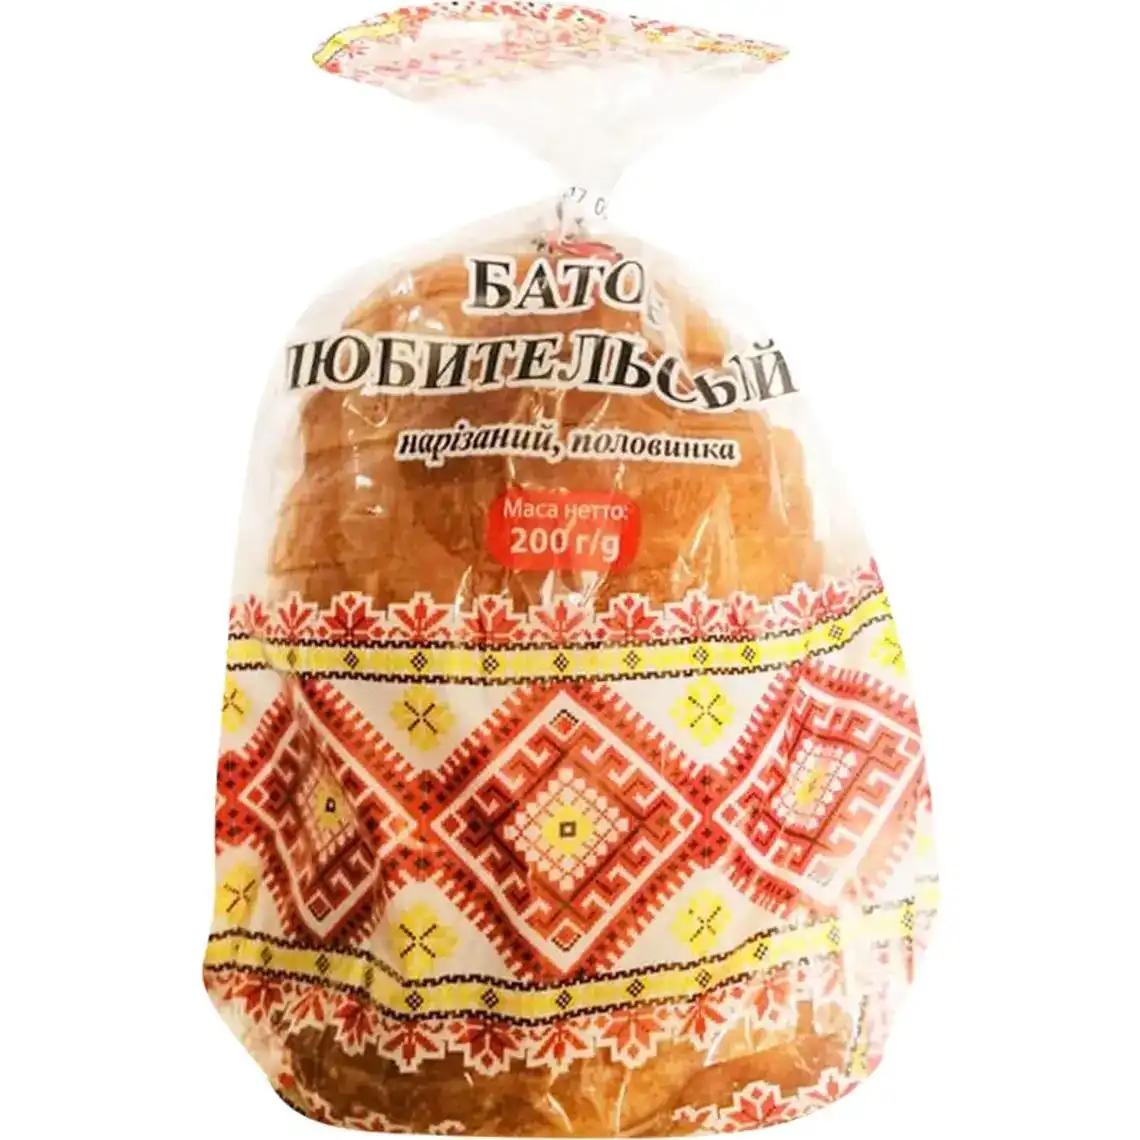 Батон Дніпровський Хлібзавод №9 Любительський пшеничний нарізний 200 г